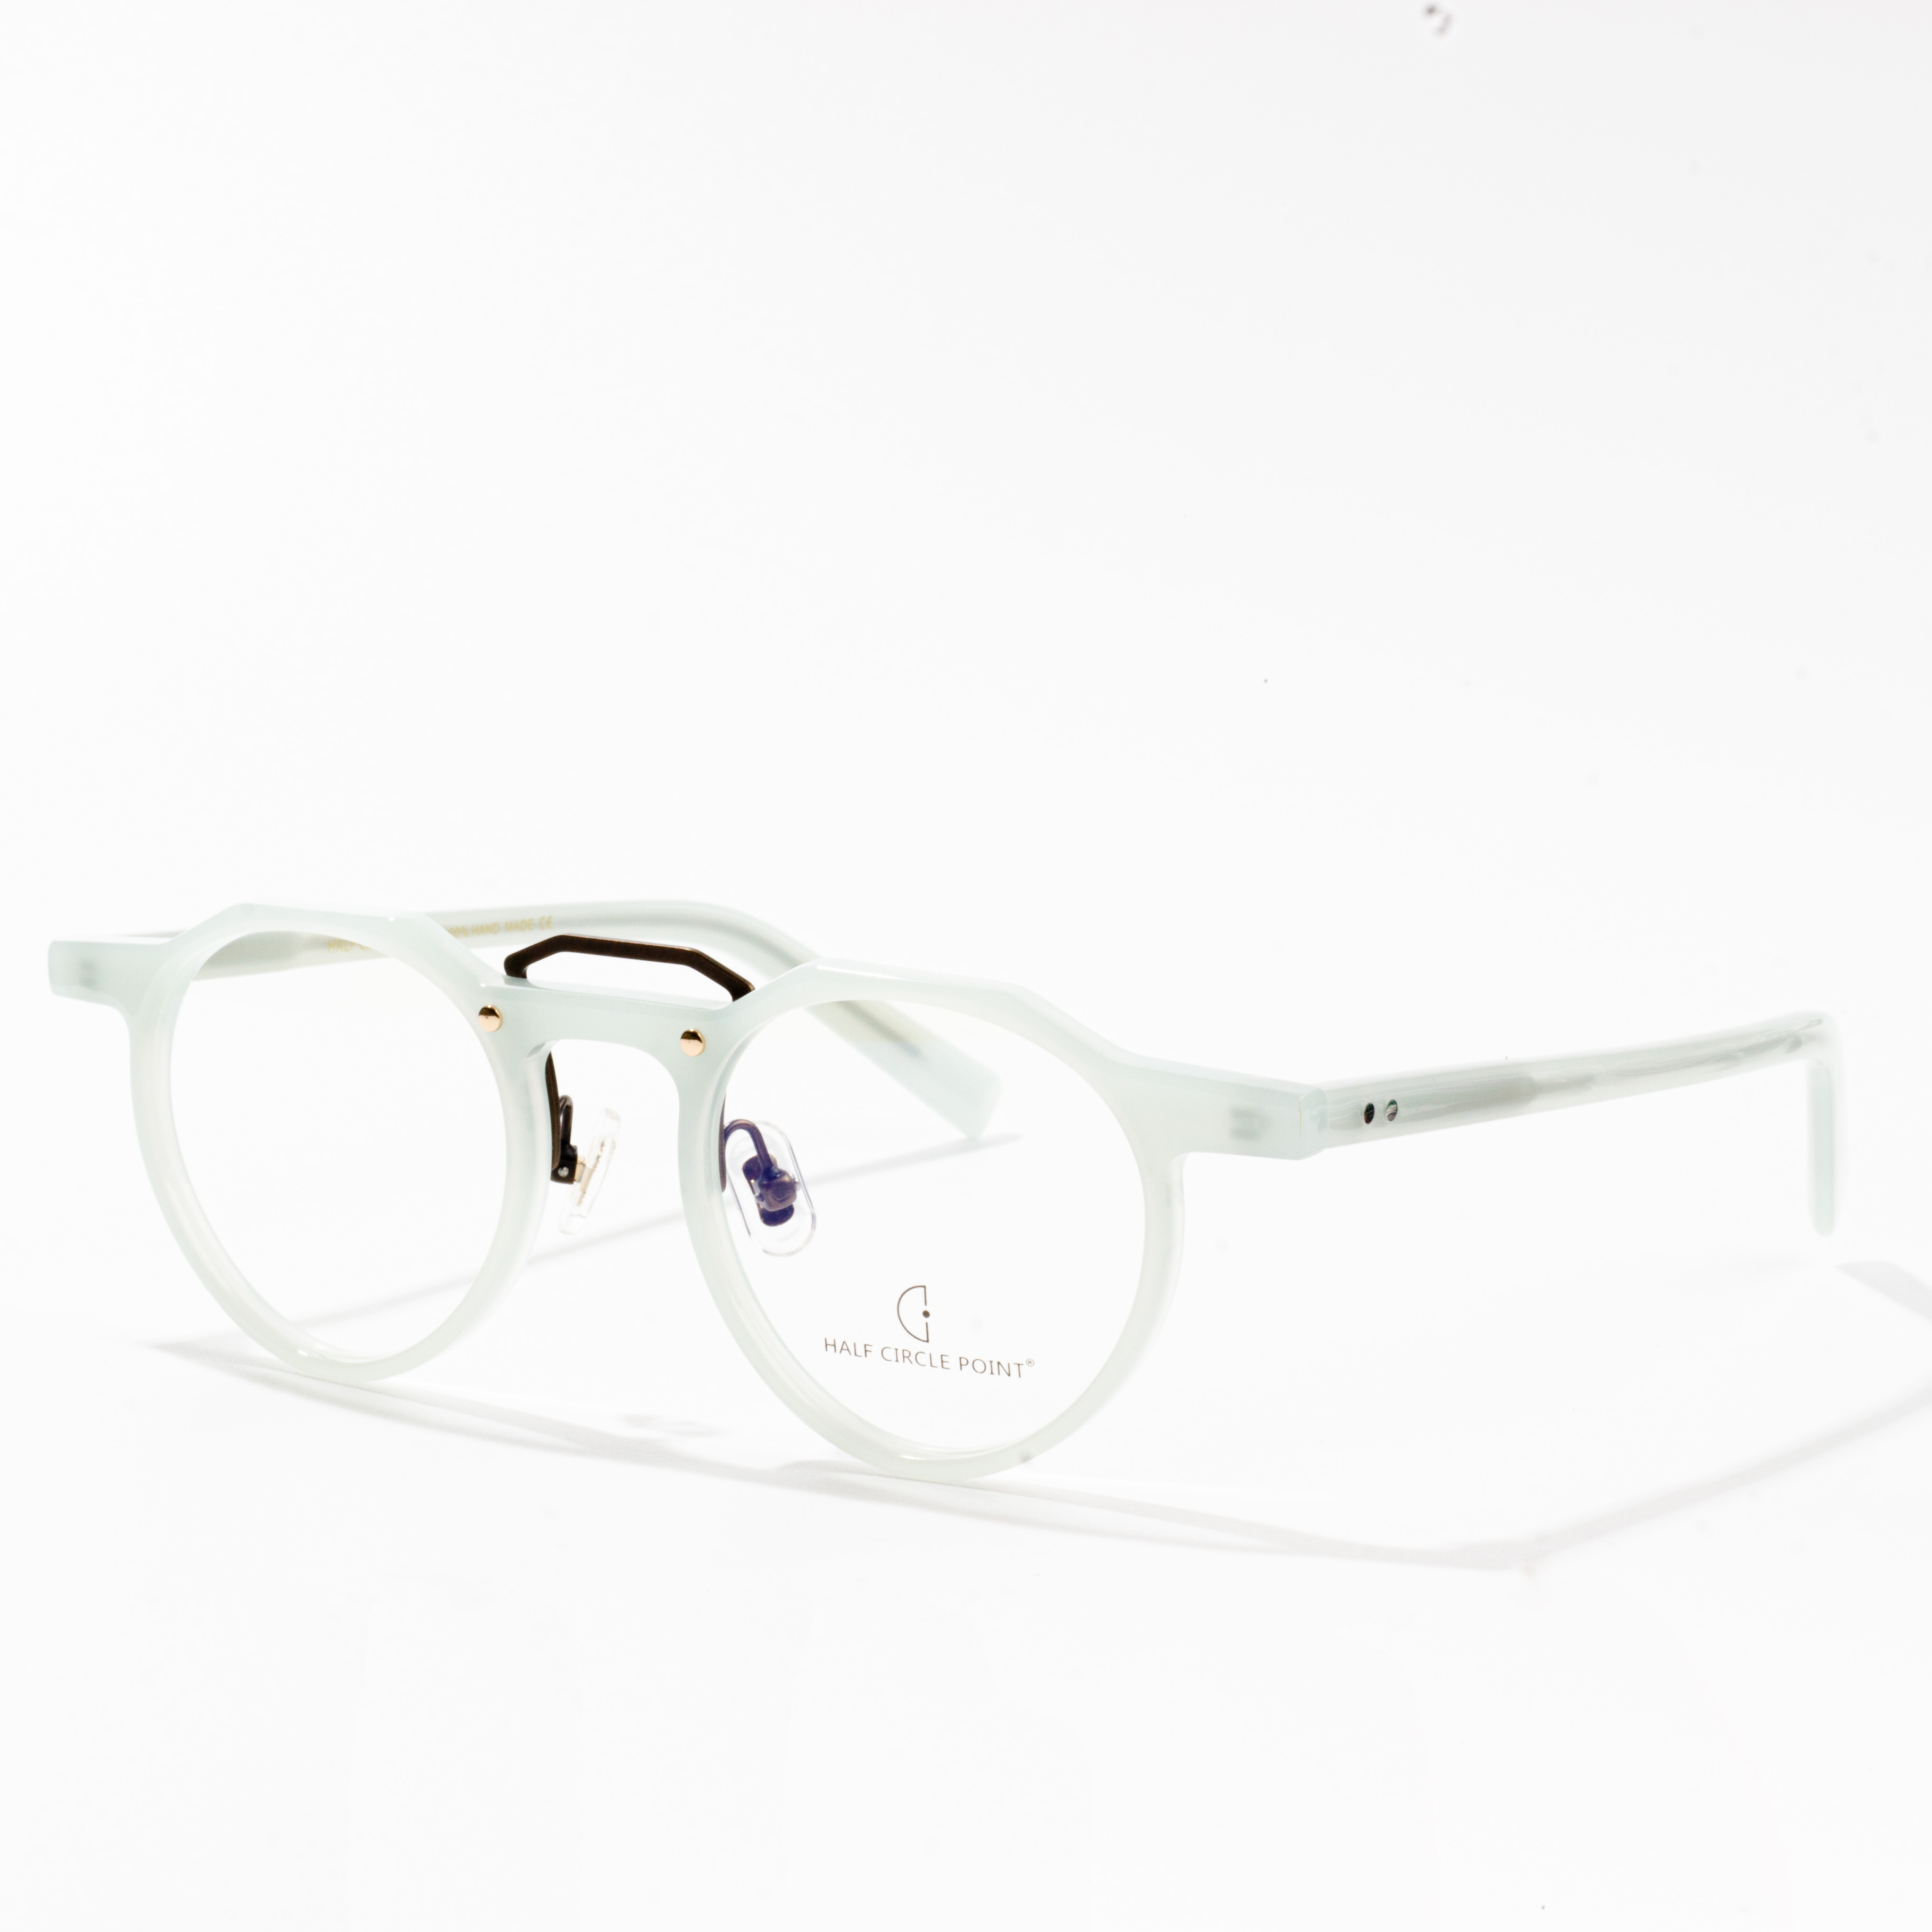 acetate glasses frame